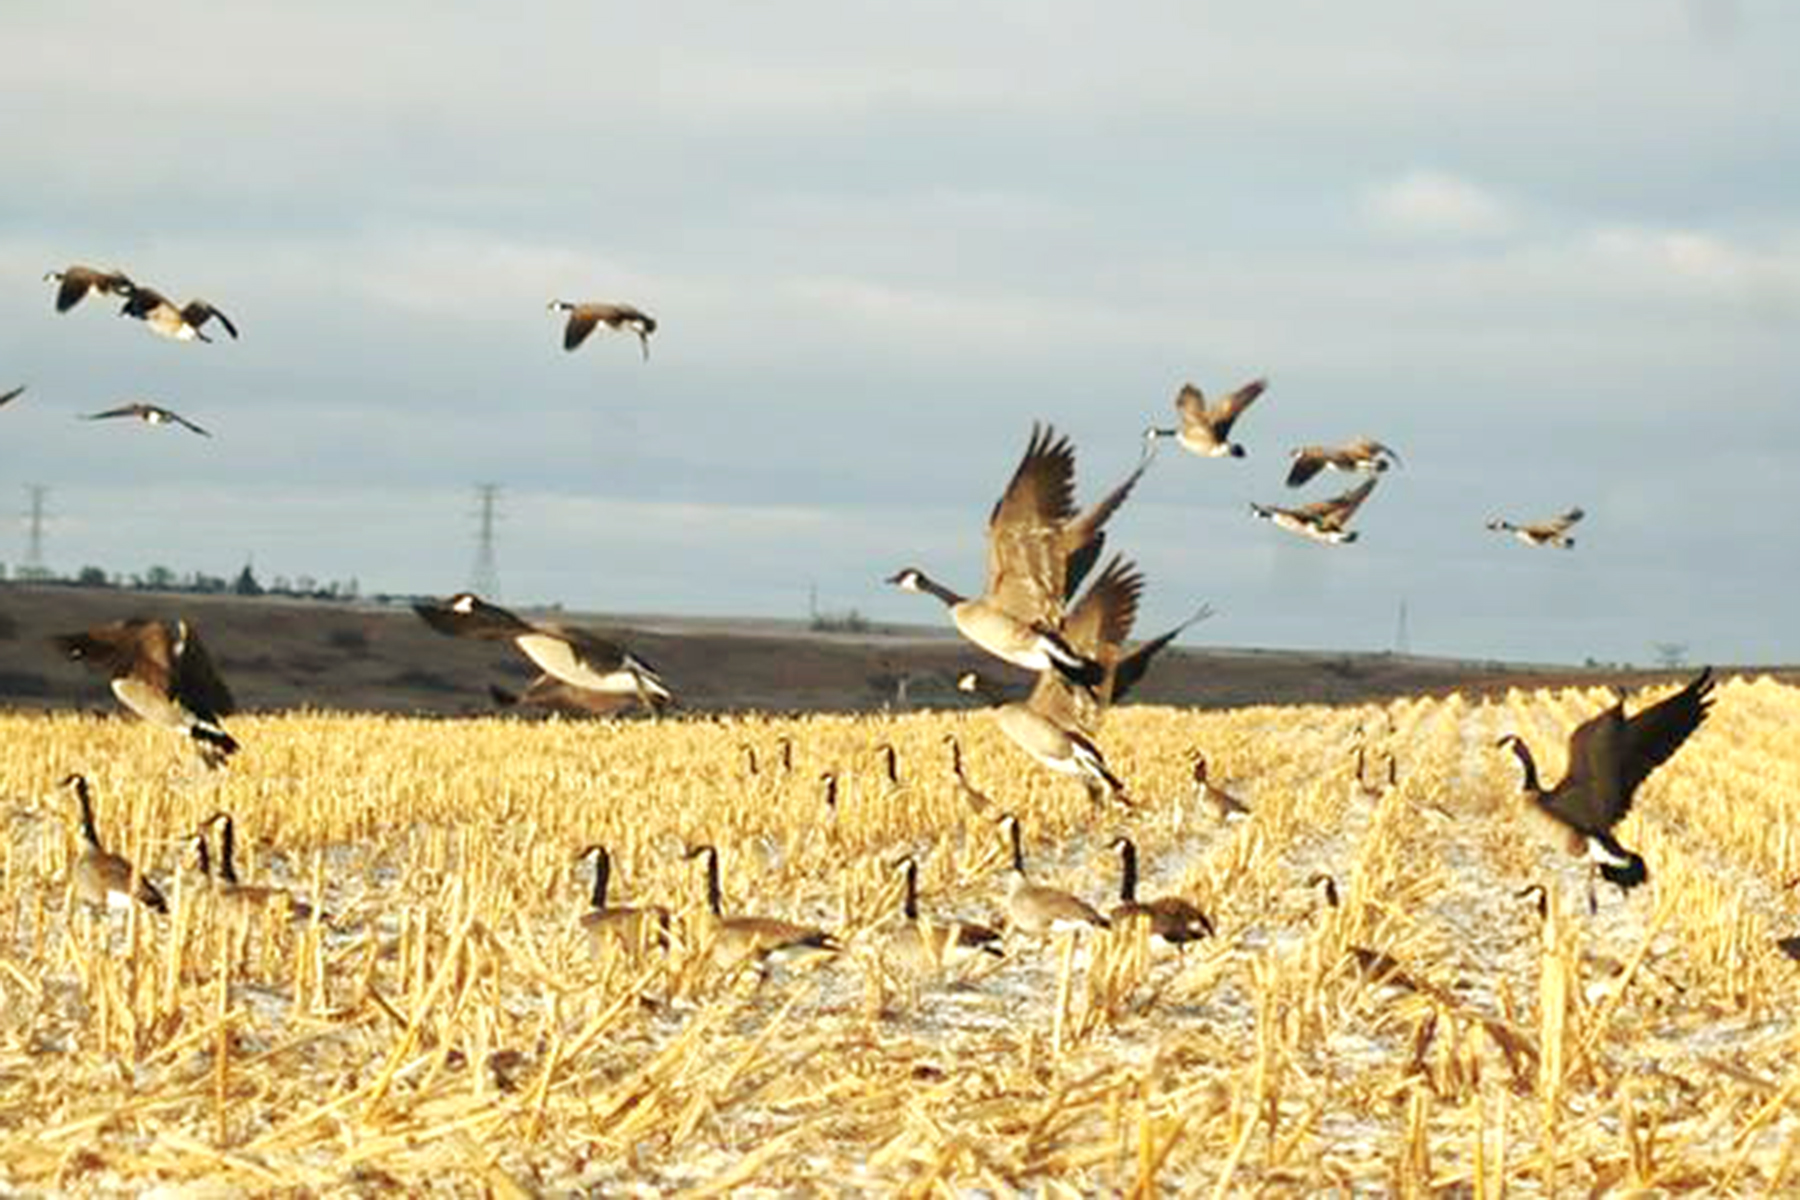 A flock of geese taking flight in a corn field near Washburn ND